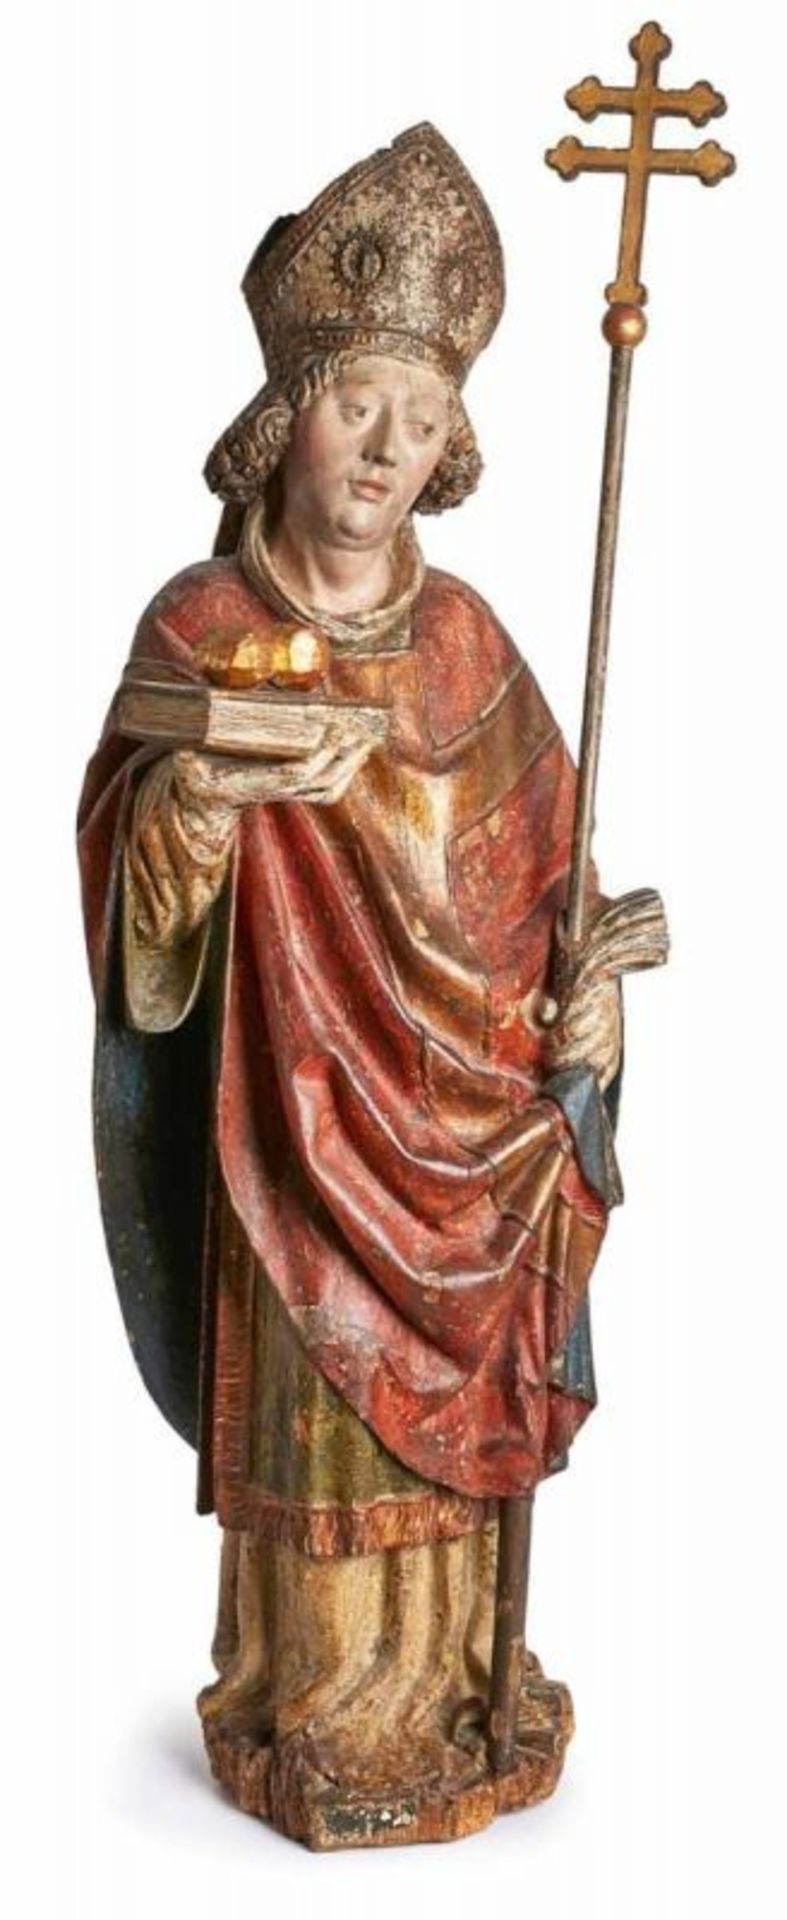 Hl. Nikolaus, süddt. 17. Jh. Lindenholz, vollrd. geschnitzt, farbig gefasst u. vergoldet. Standfigur - Bild 2 aus 6